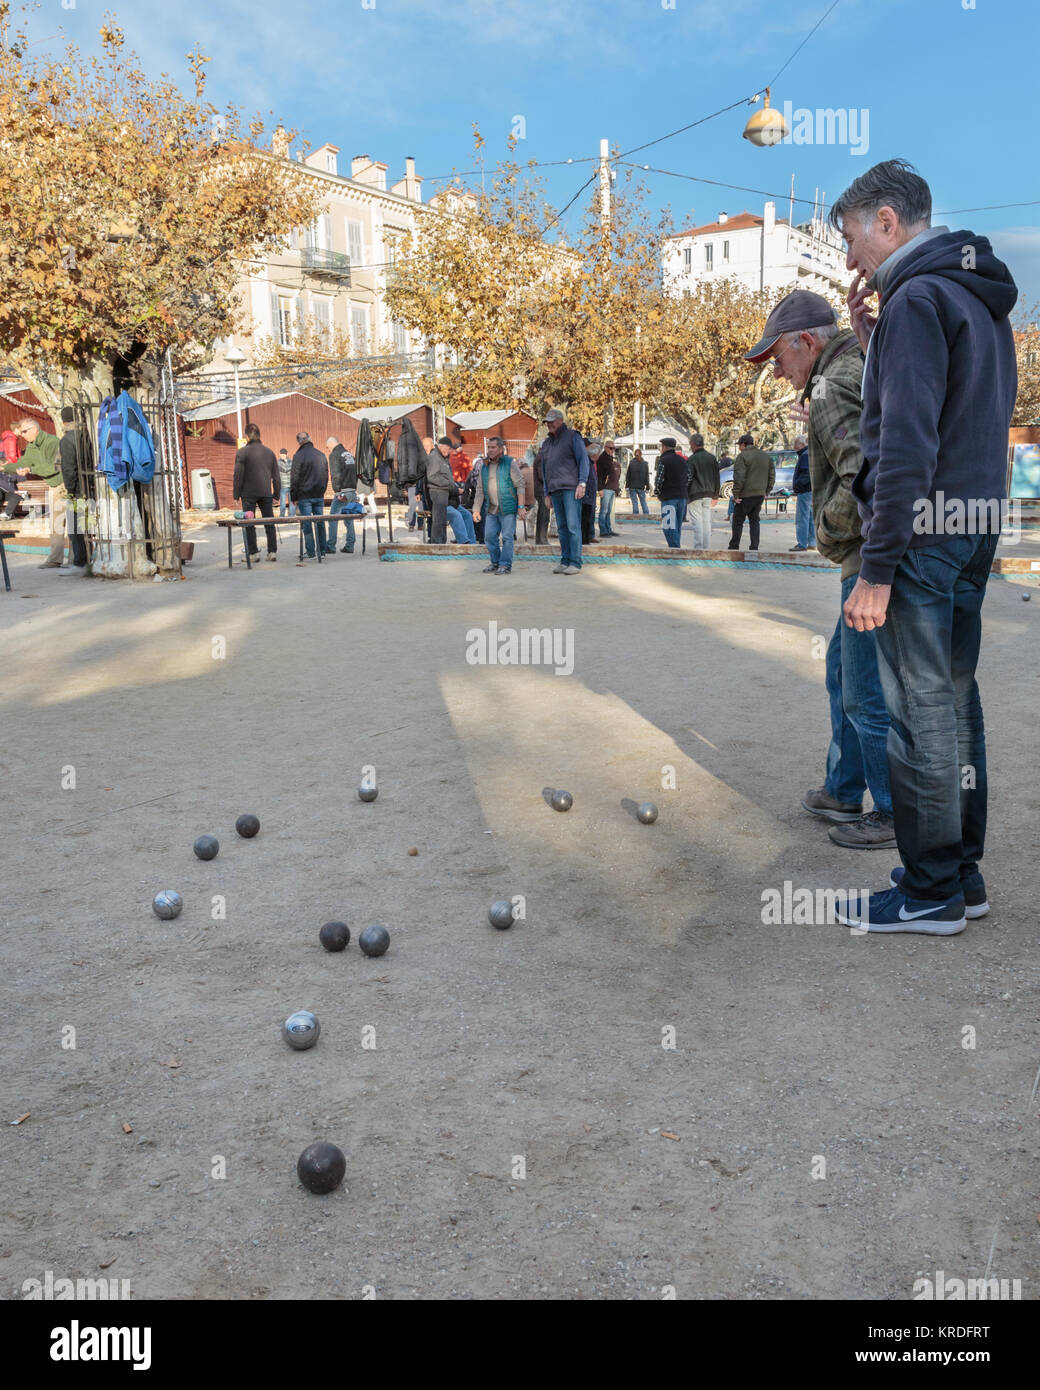 Hommes jouant aux boules, ou de pétanque, un jeu de balle, typiquement français à Cannes, Côte d'Azur, sud de la France Banque D'Images